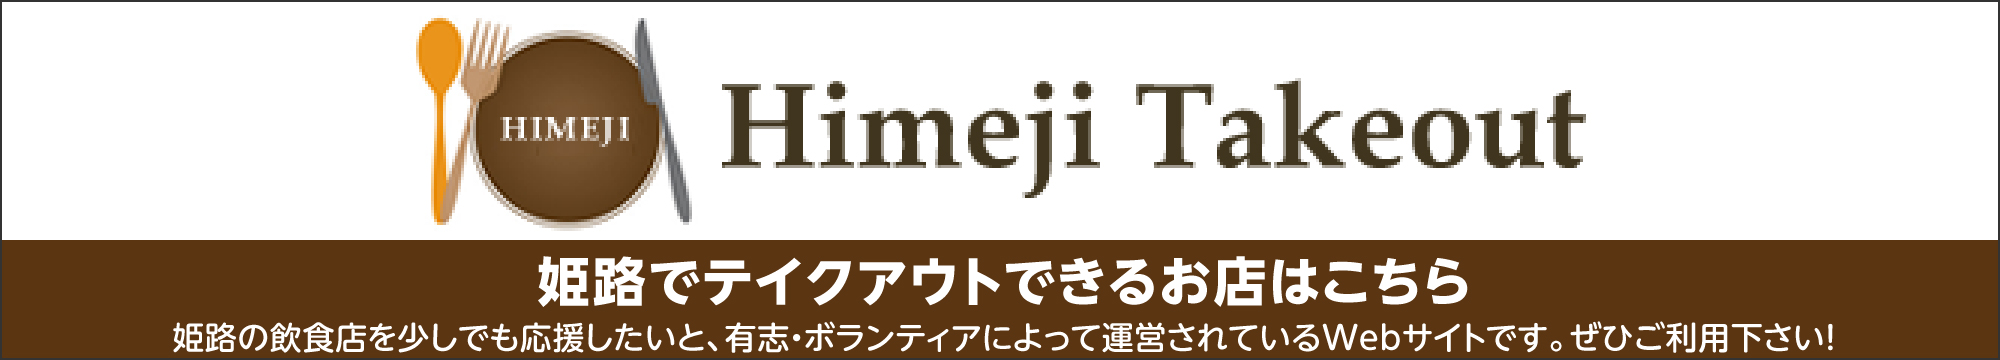 Himeji Takeout